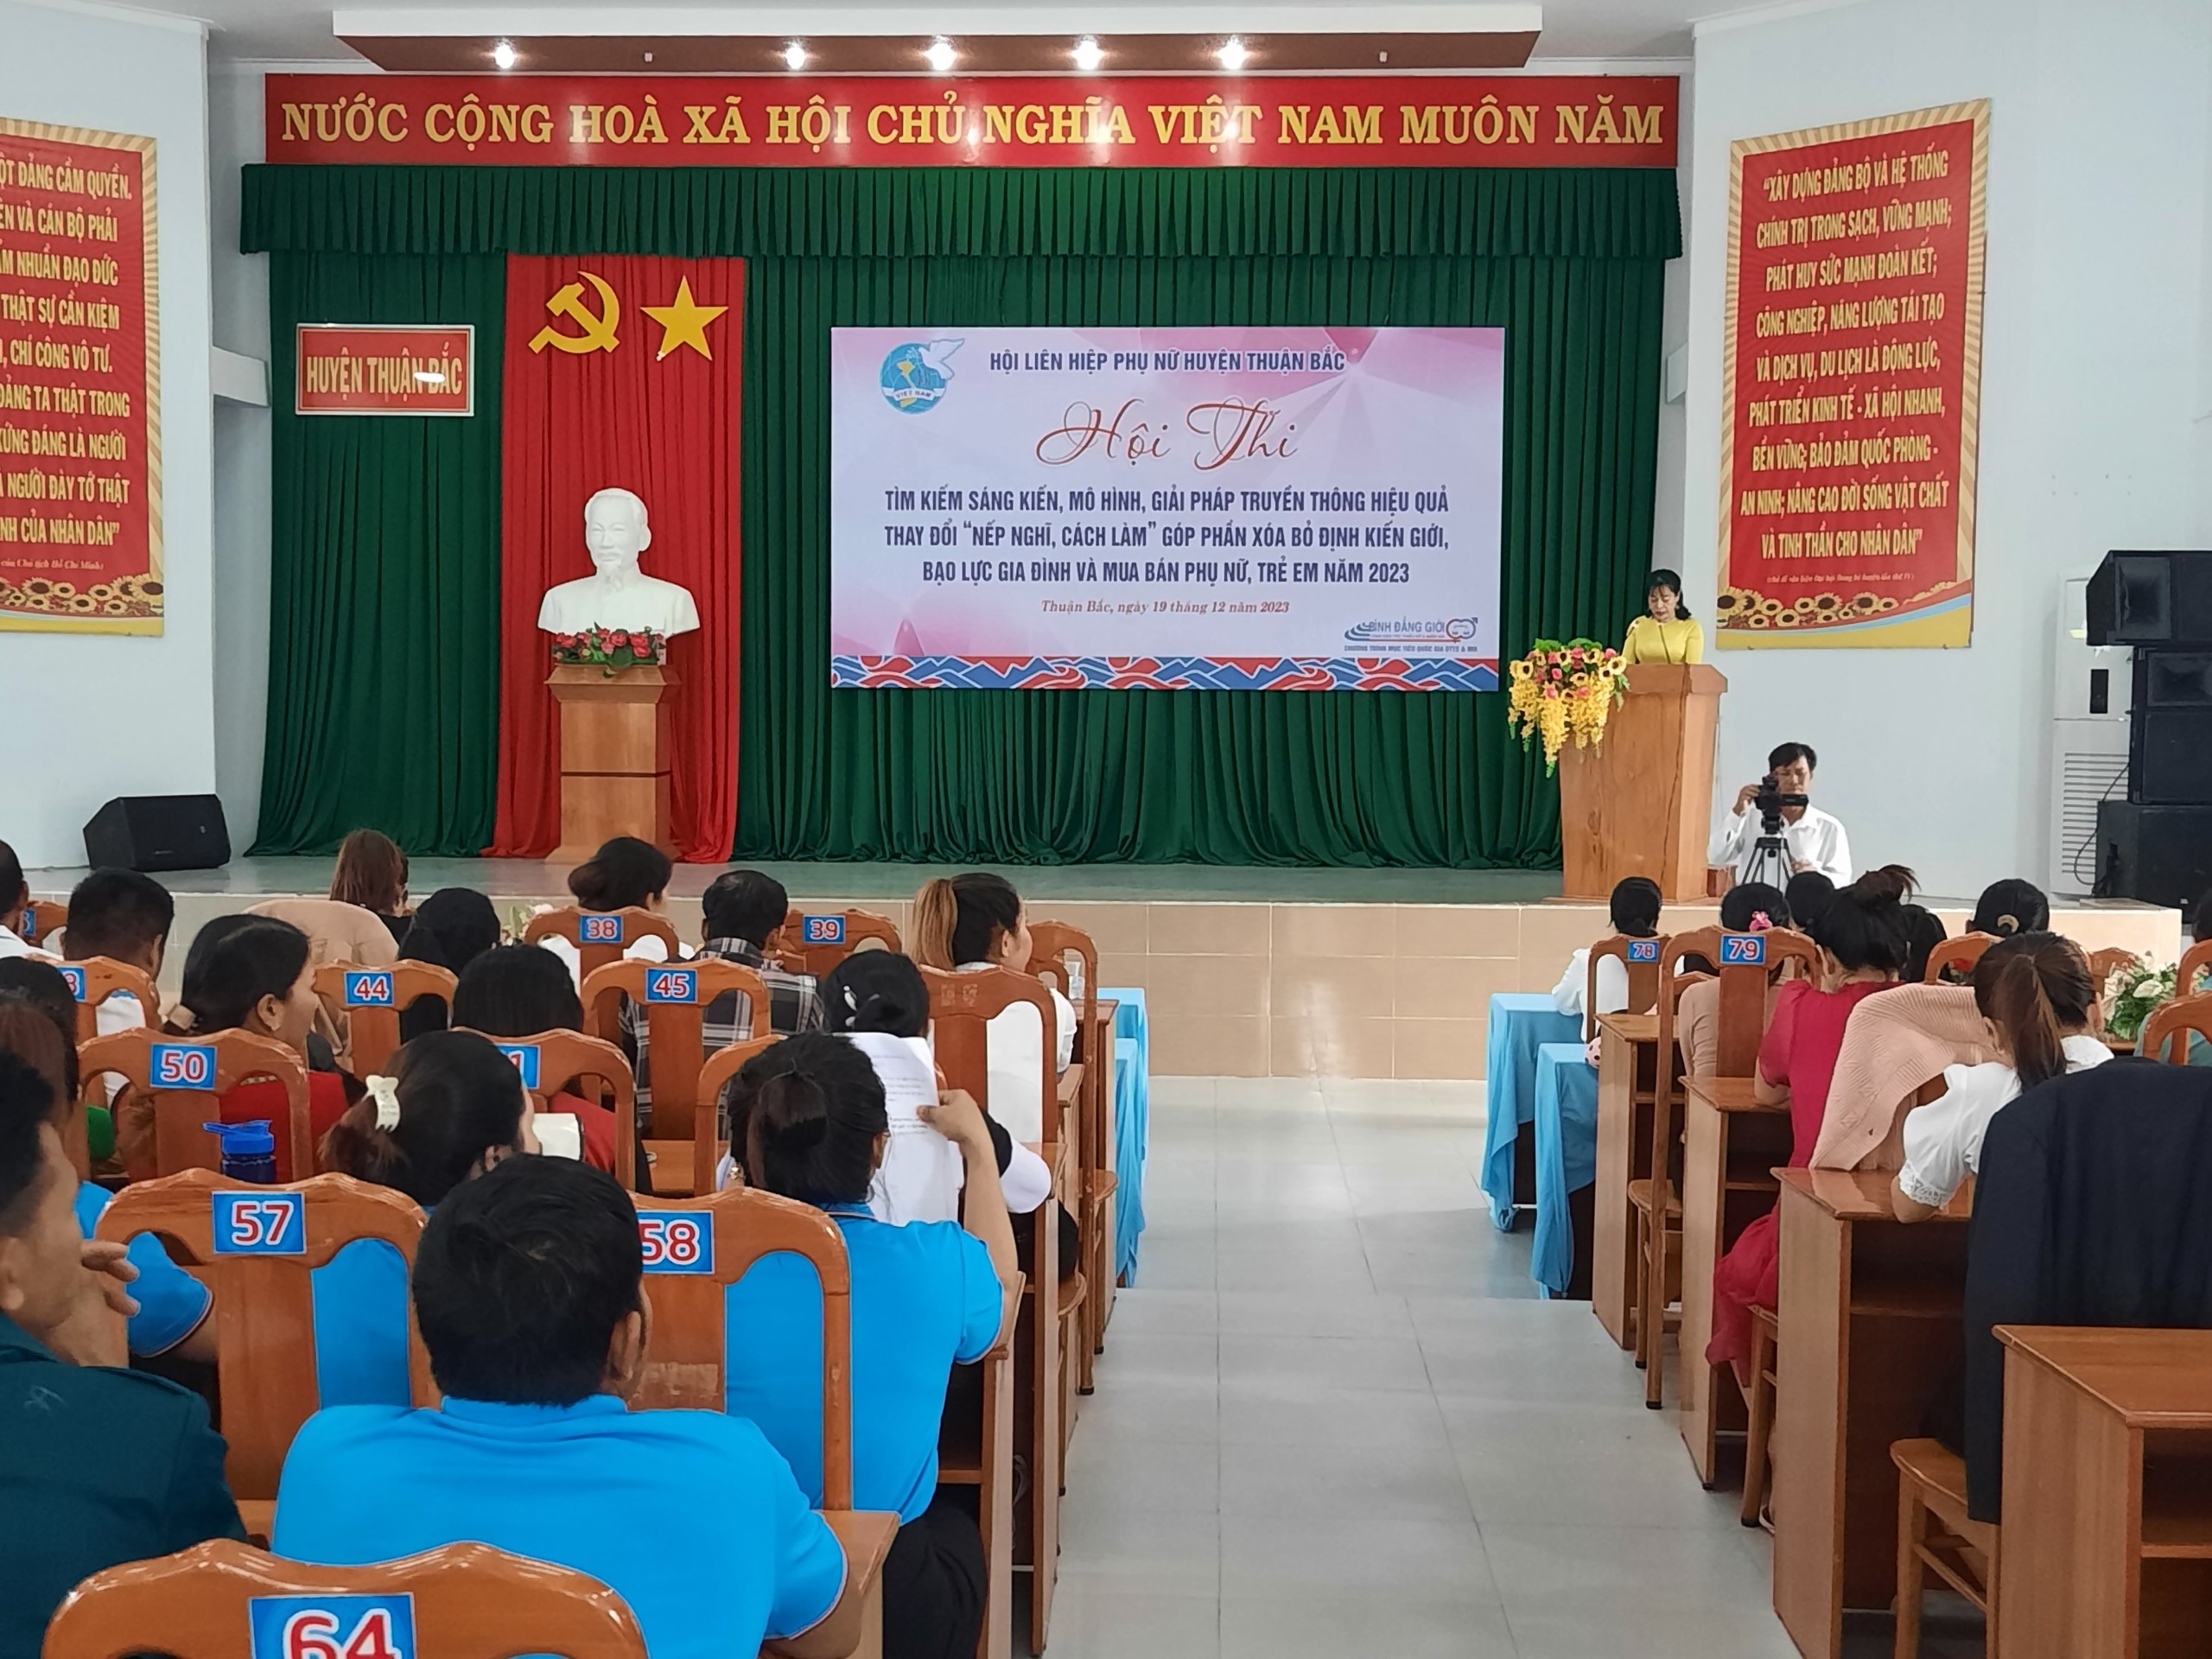 Hội Liên Hiệp Phụ Nữ Huyện Thuận Bắc:  Tổ chức Hội thi truyền thông hiệu quả về thực hiện bình đẳng giới và những  vấn đề cấp thiết  về phụ nữ và trẻ em.